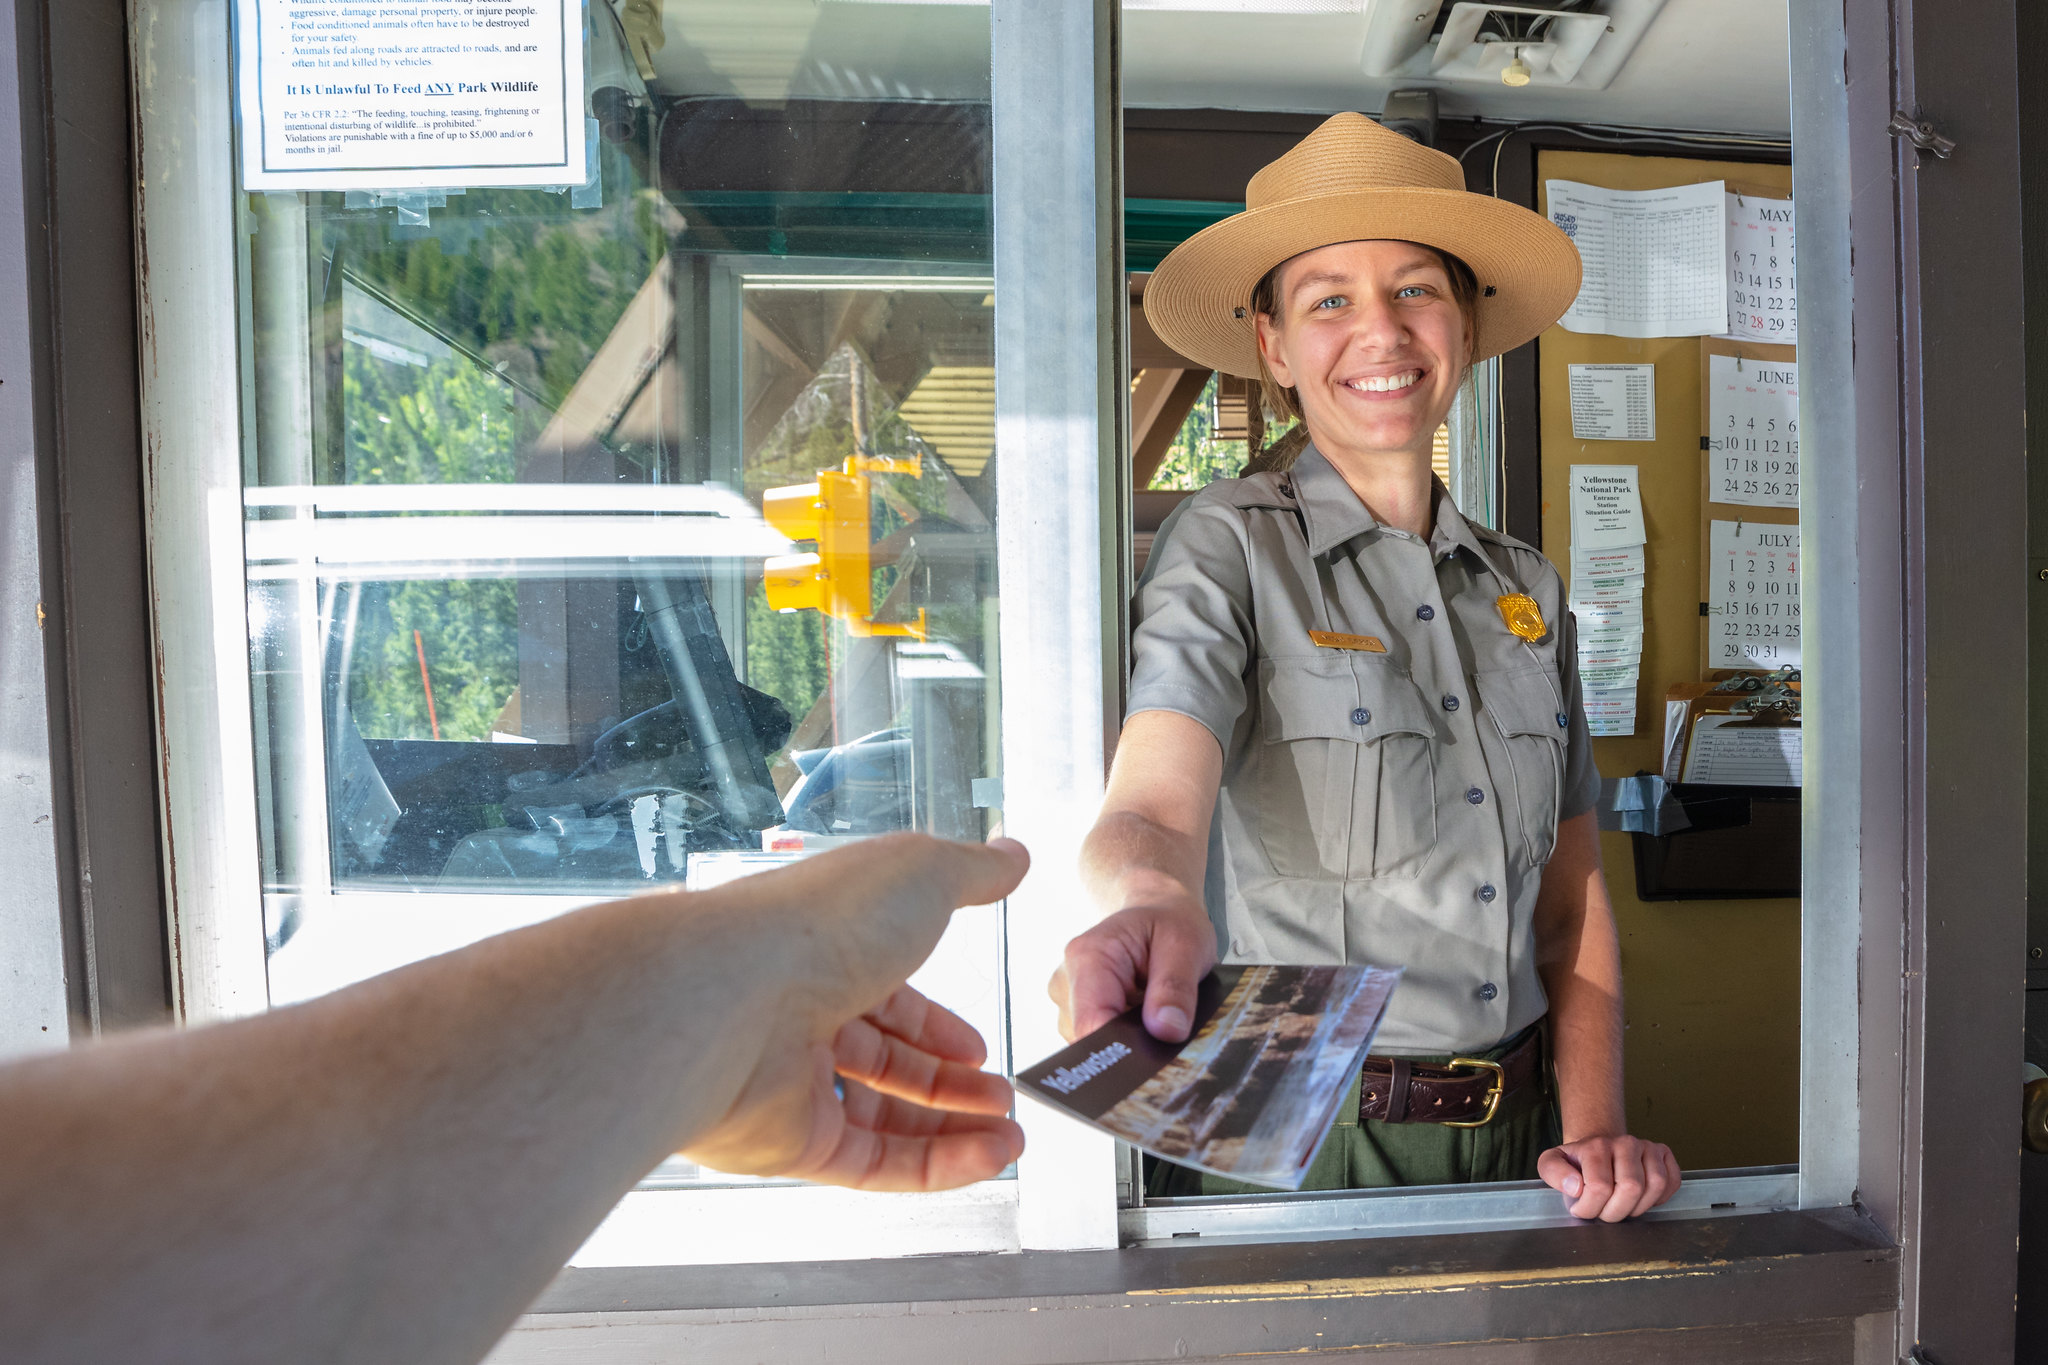 Woman in park ranger uniform handing brochure to driver in vehicle.